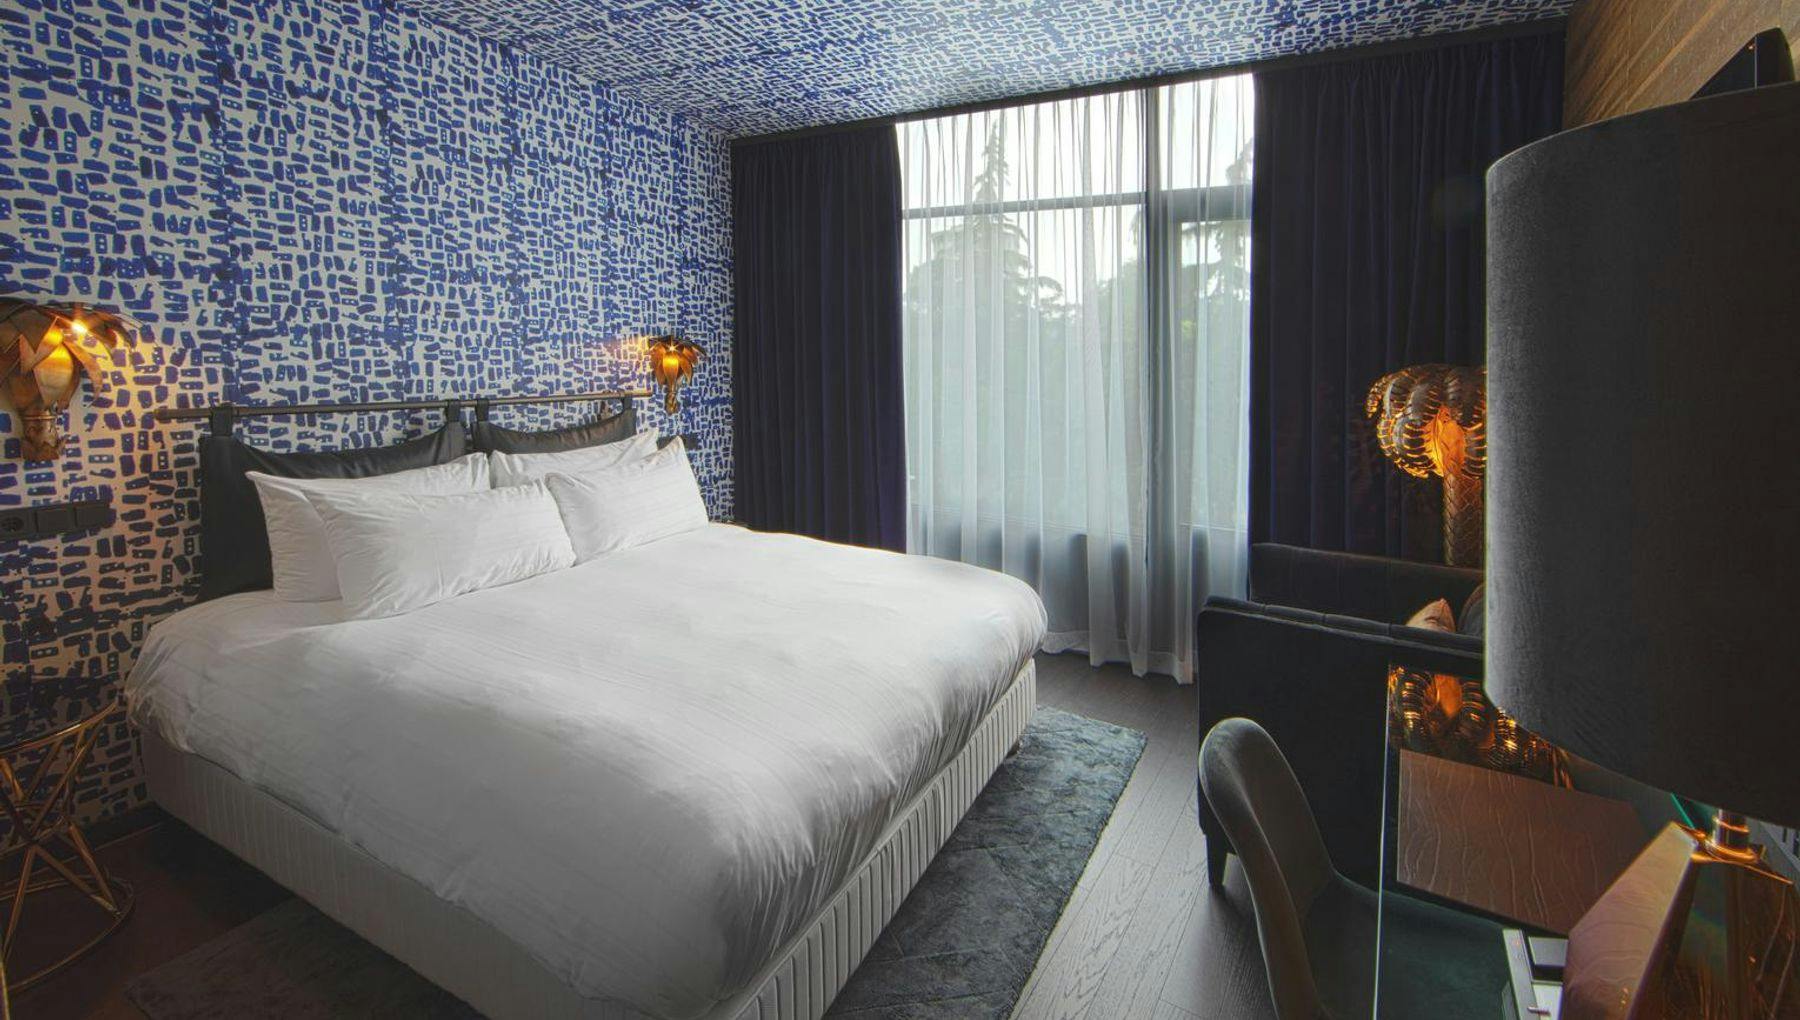 Design hotel room of Apollo Hotel Amsterdam.